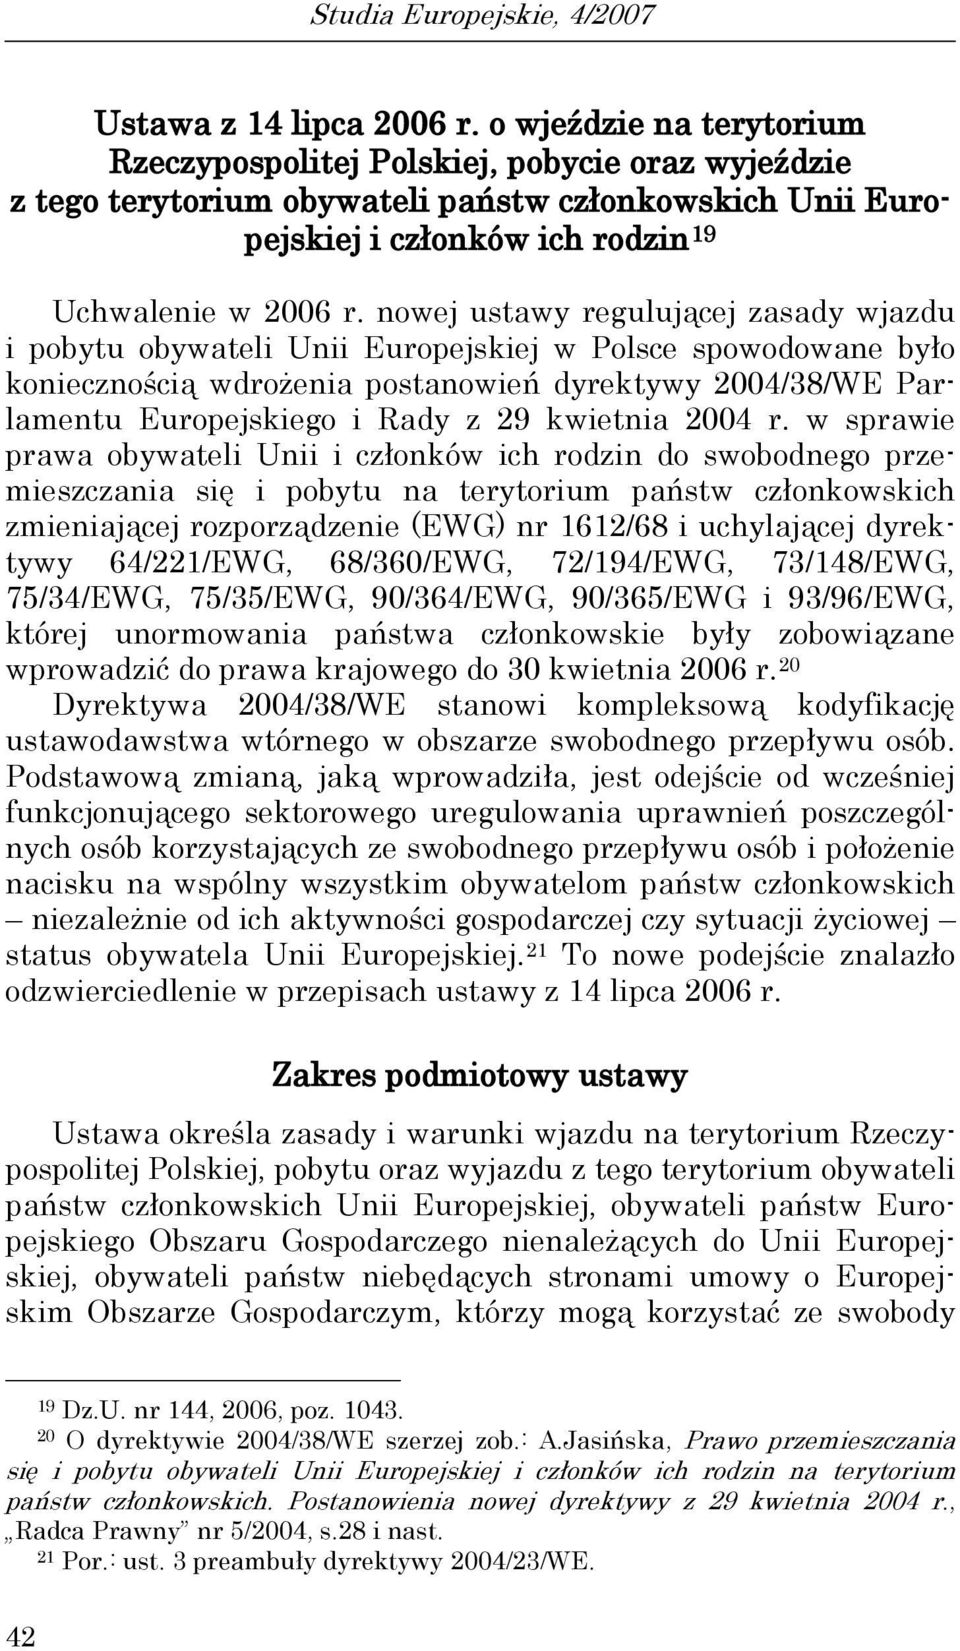 nowej ustawy regulującej zasady wjazdu i pobytu obywateli Unii Europejskiej w Polsce spowodowane było koniecznością wdrożenia postanowień dyrektywy 2004/38/WE Parlamentu Europejskiego i Rady z 29